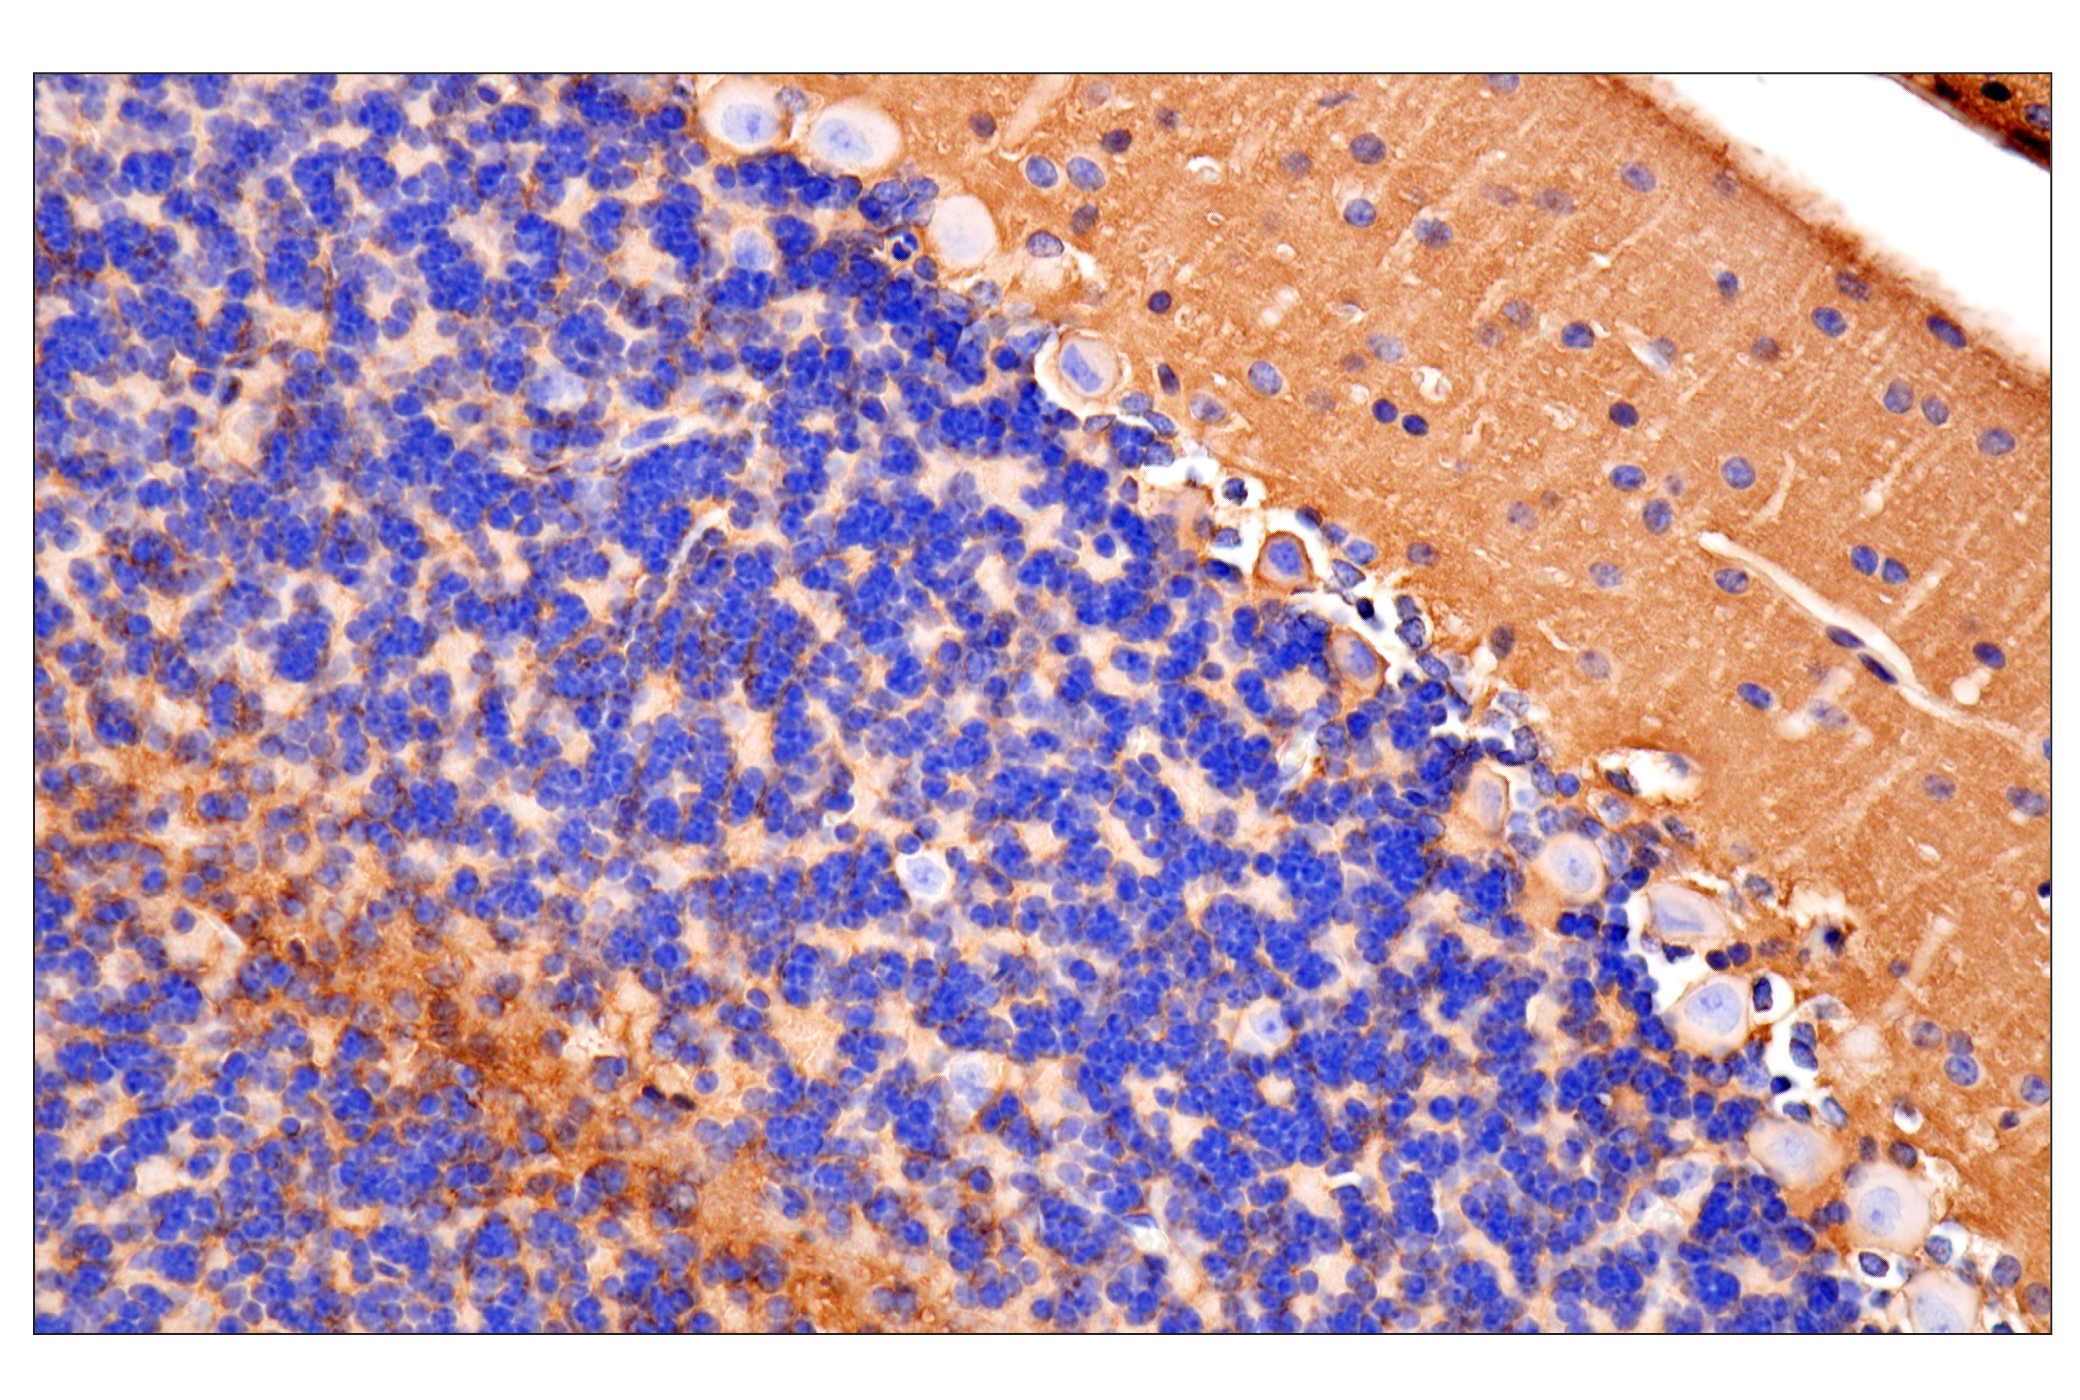  Image 23: Mouse Reactive Exosome Marker Antibody Sampler Kit